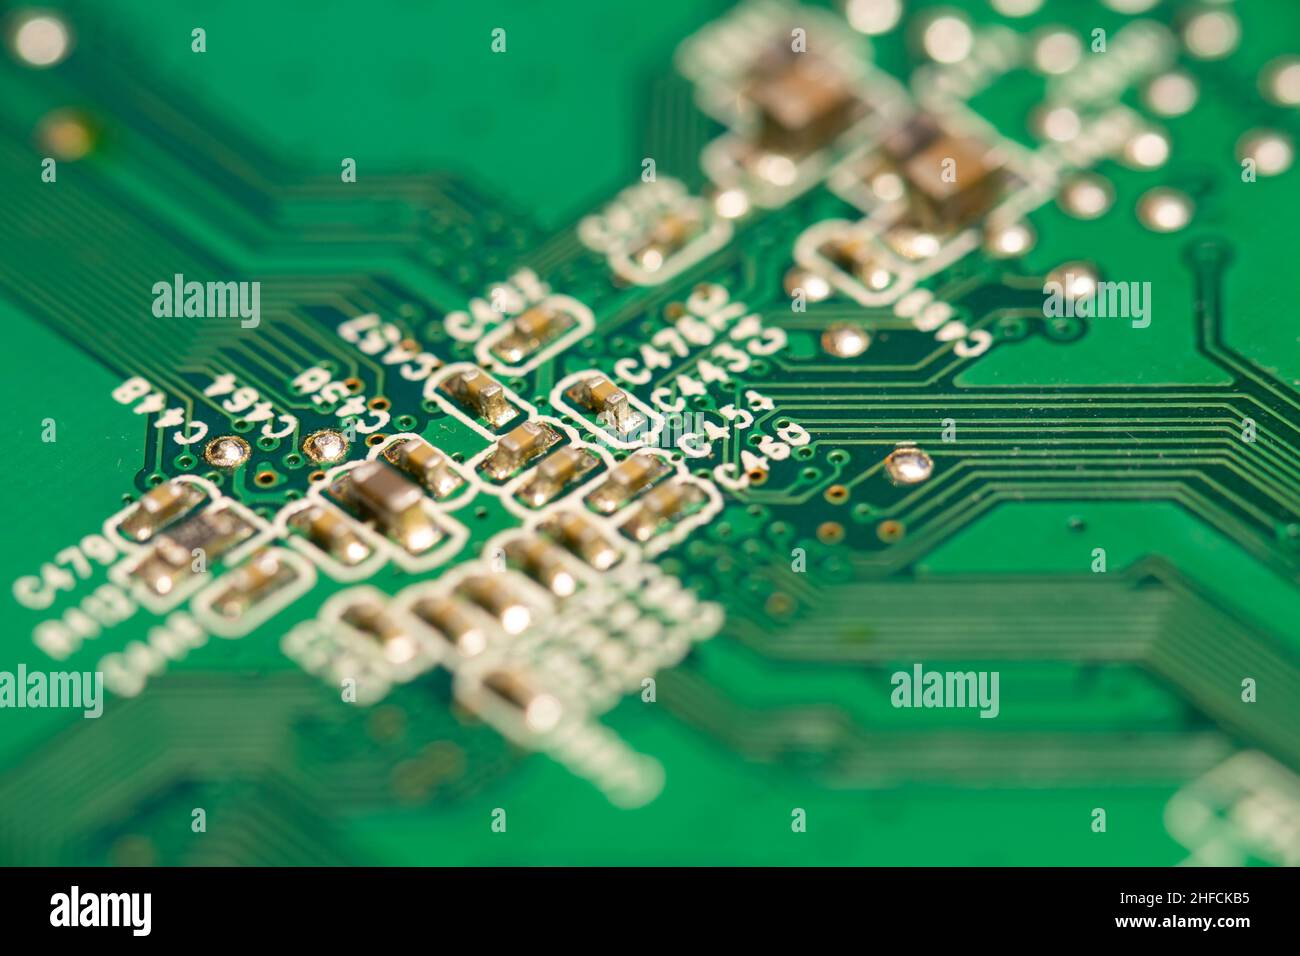 Viele kleine elektronische Bauteile löten auf grüne Leiterplatte (PCB). Stockfoto